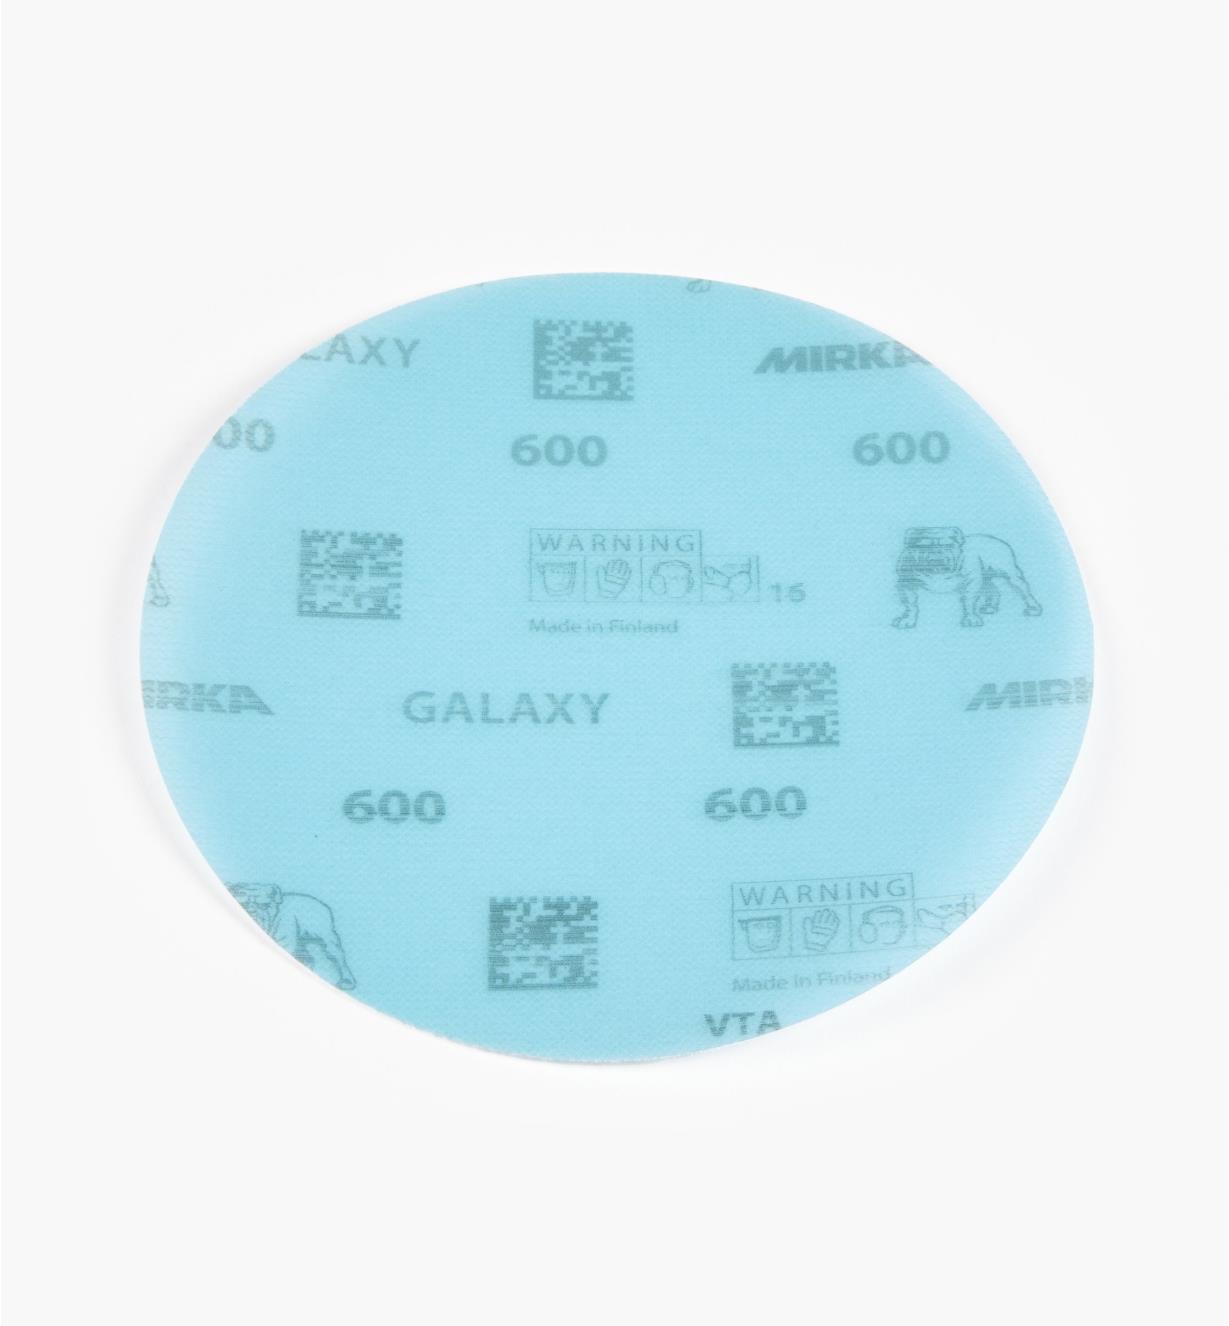 08K2113 - Disque abrasif autoagrippant Galaxy, 6 po, grain 600, l'unité